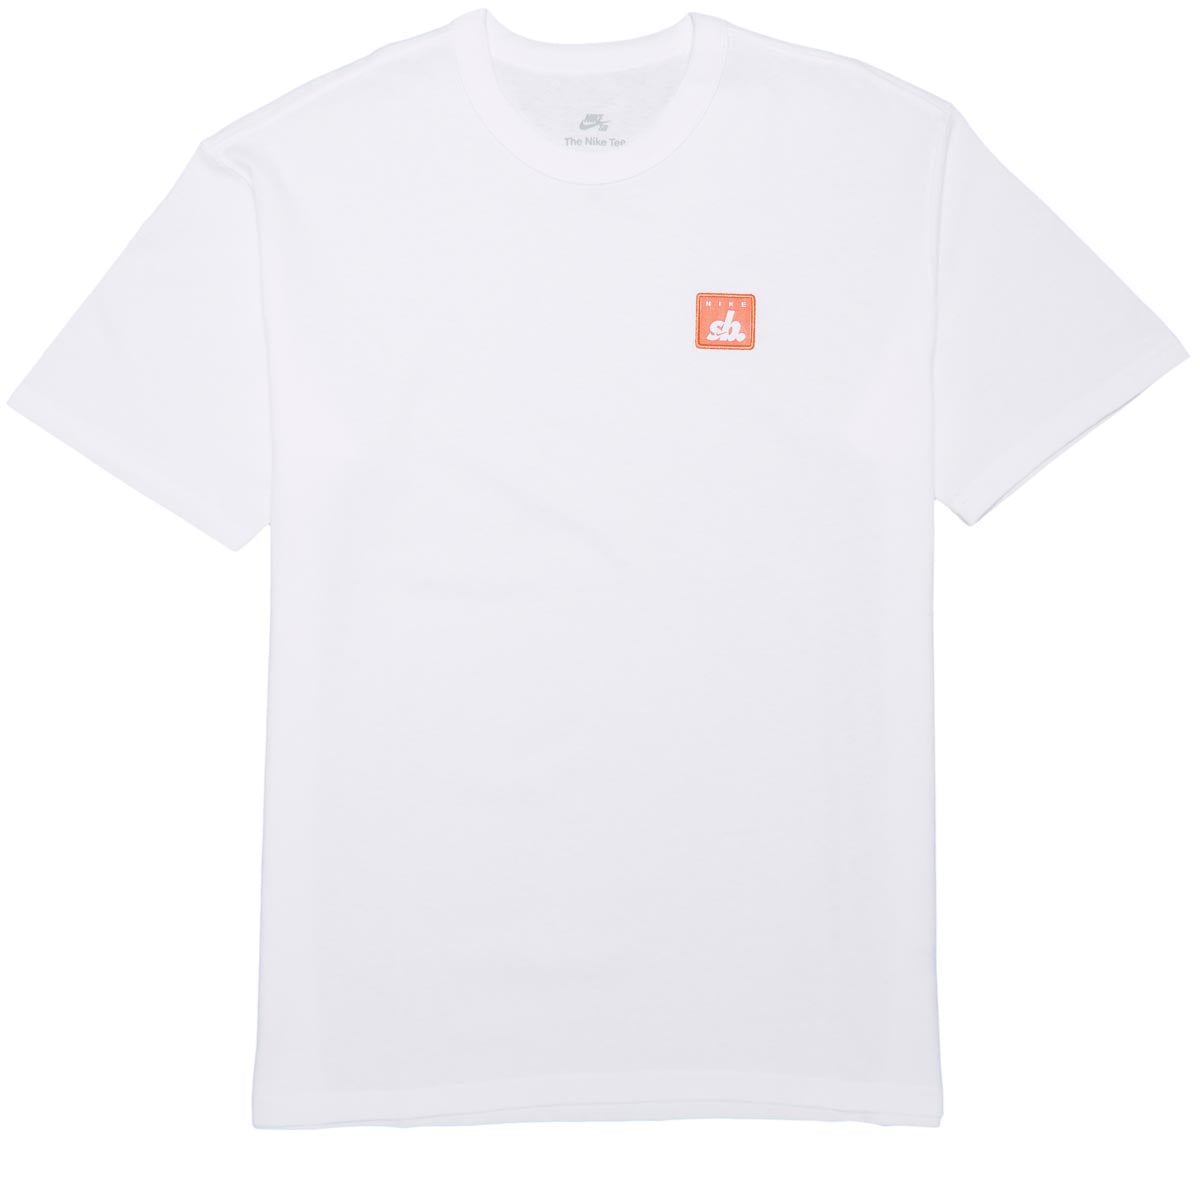 Nike SB Square T-Shirt - White image 1